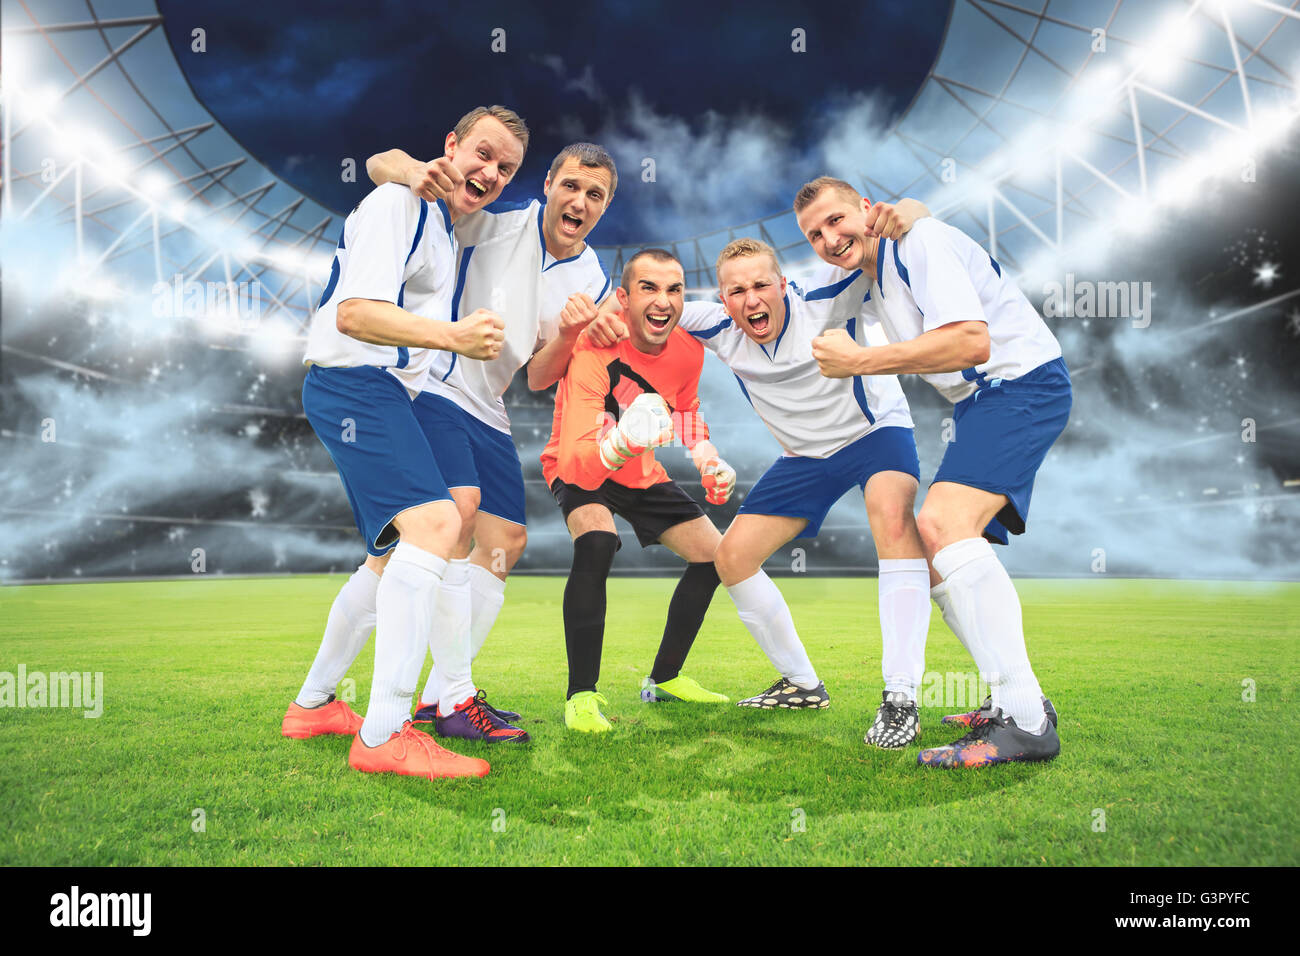 Escenas de un partido de fútbol o soccer con vítores reproductor masculino Foto de stock